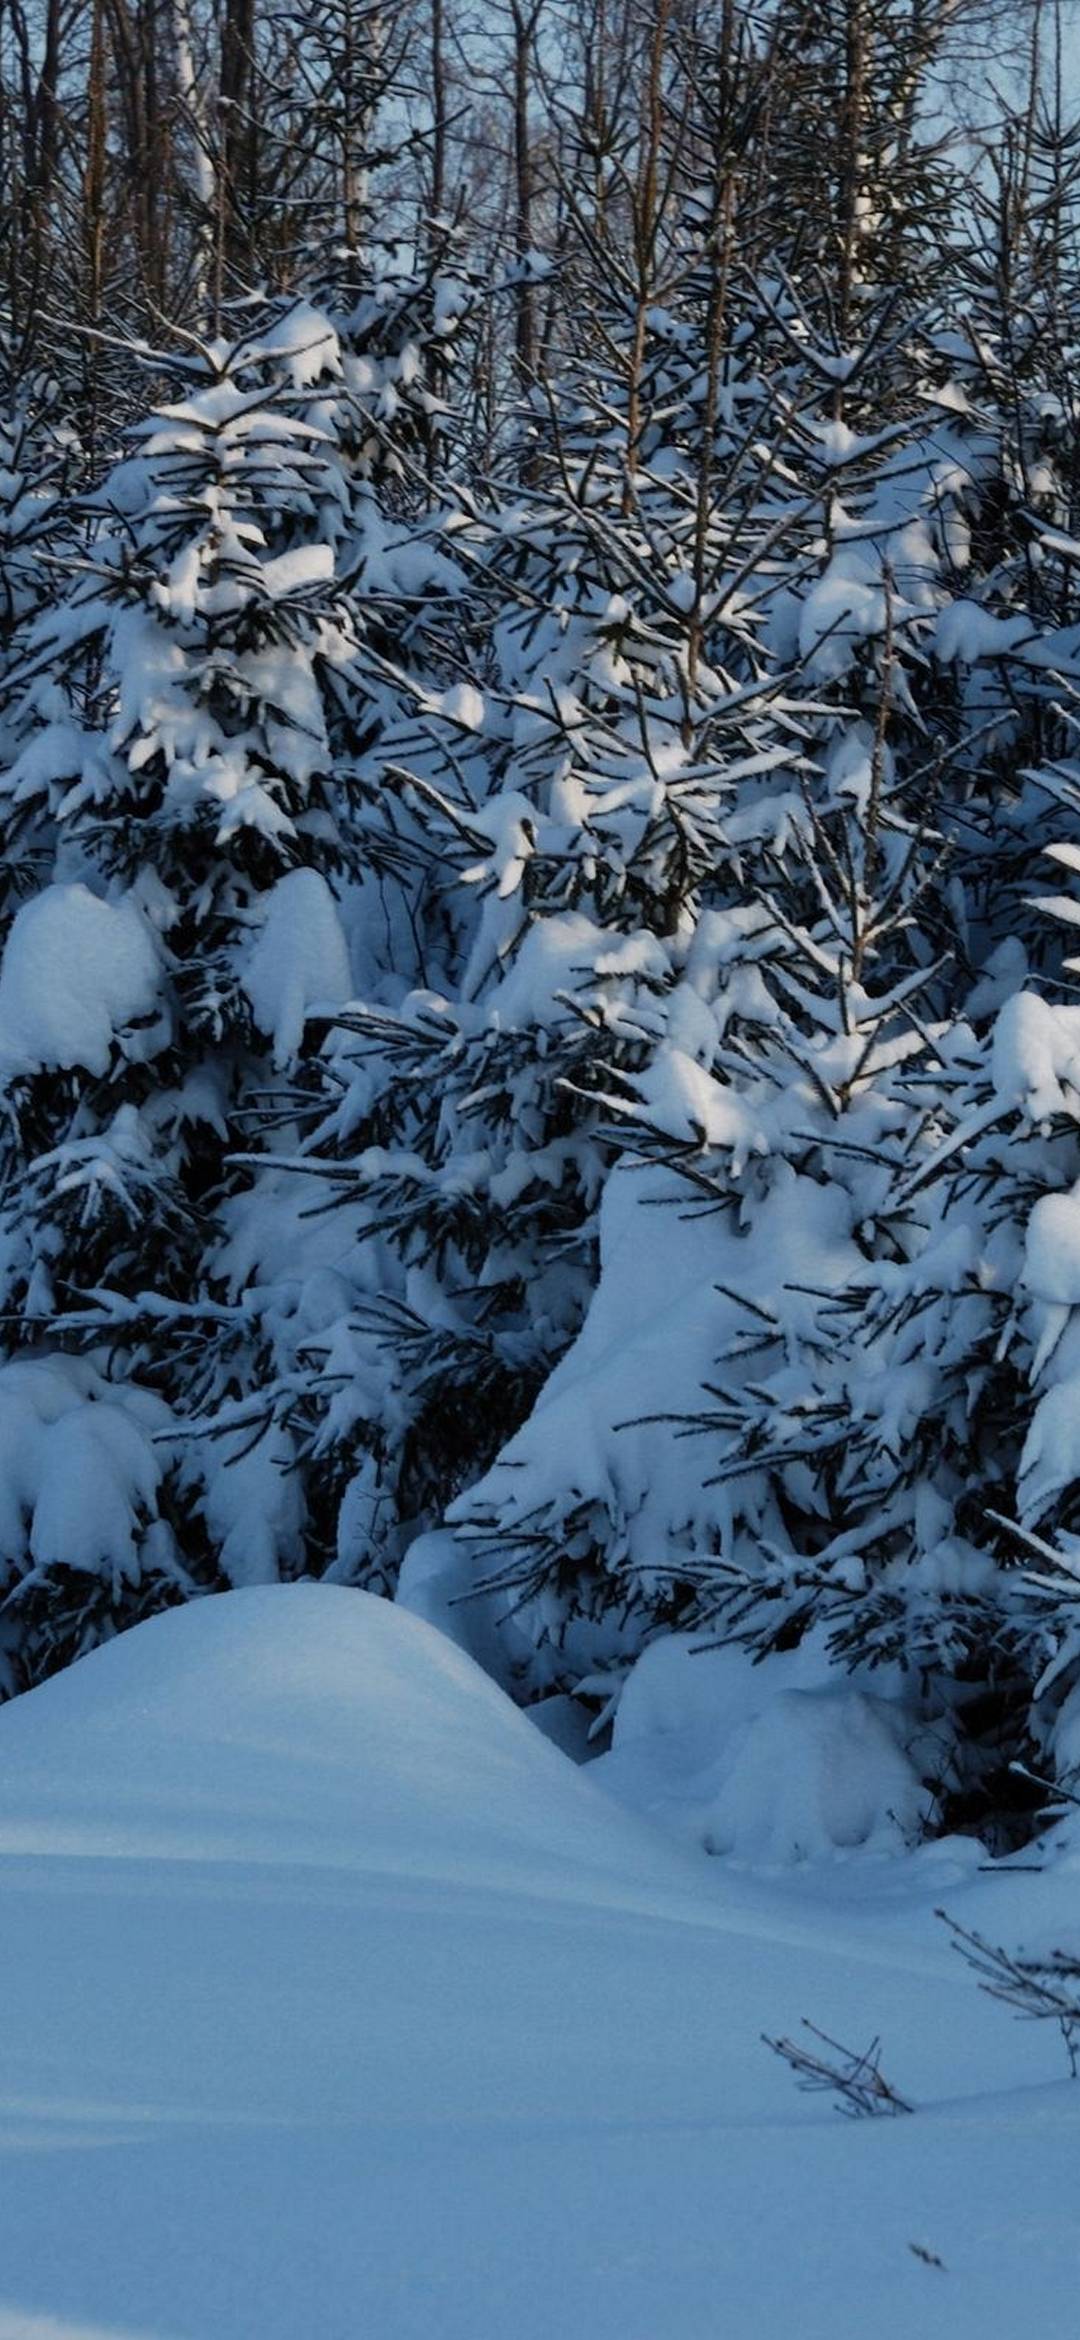 Winter Fir Trees Snow [1080x2340]